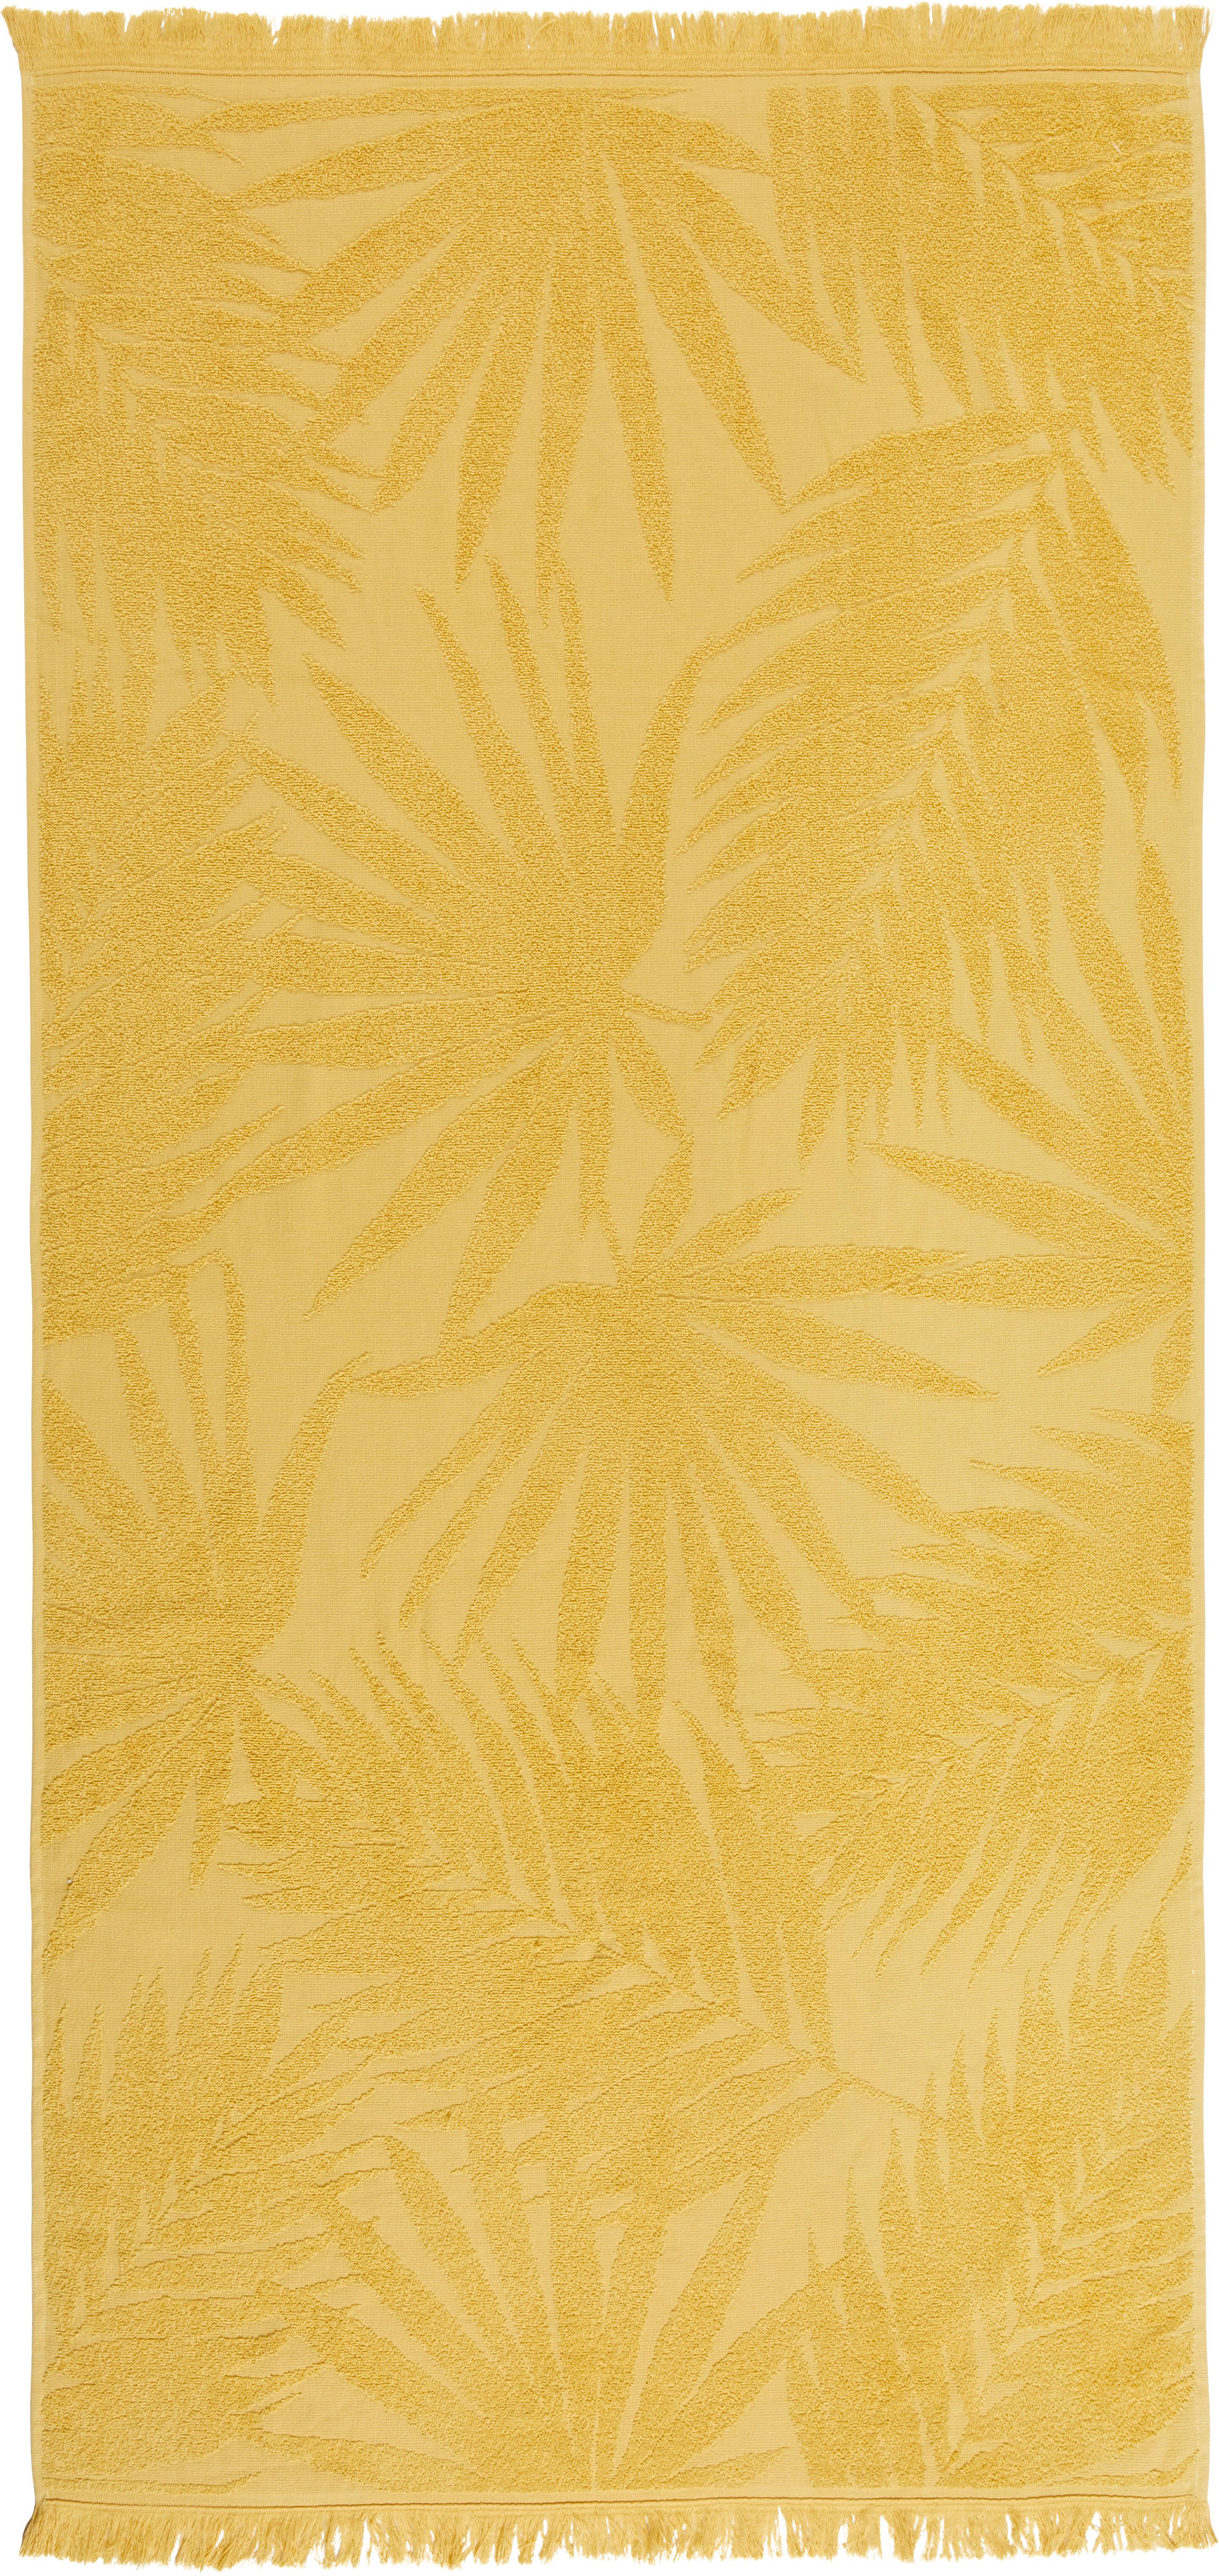 Brisača Za Na Plažo Mara - rumena, Konvencionalno, tekstil (80/160cm) - Modern Living